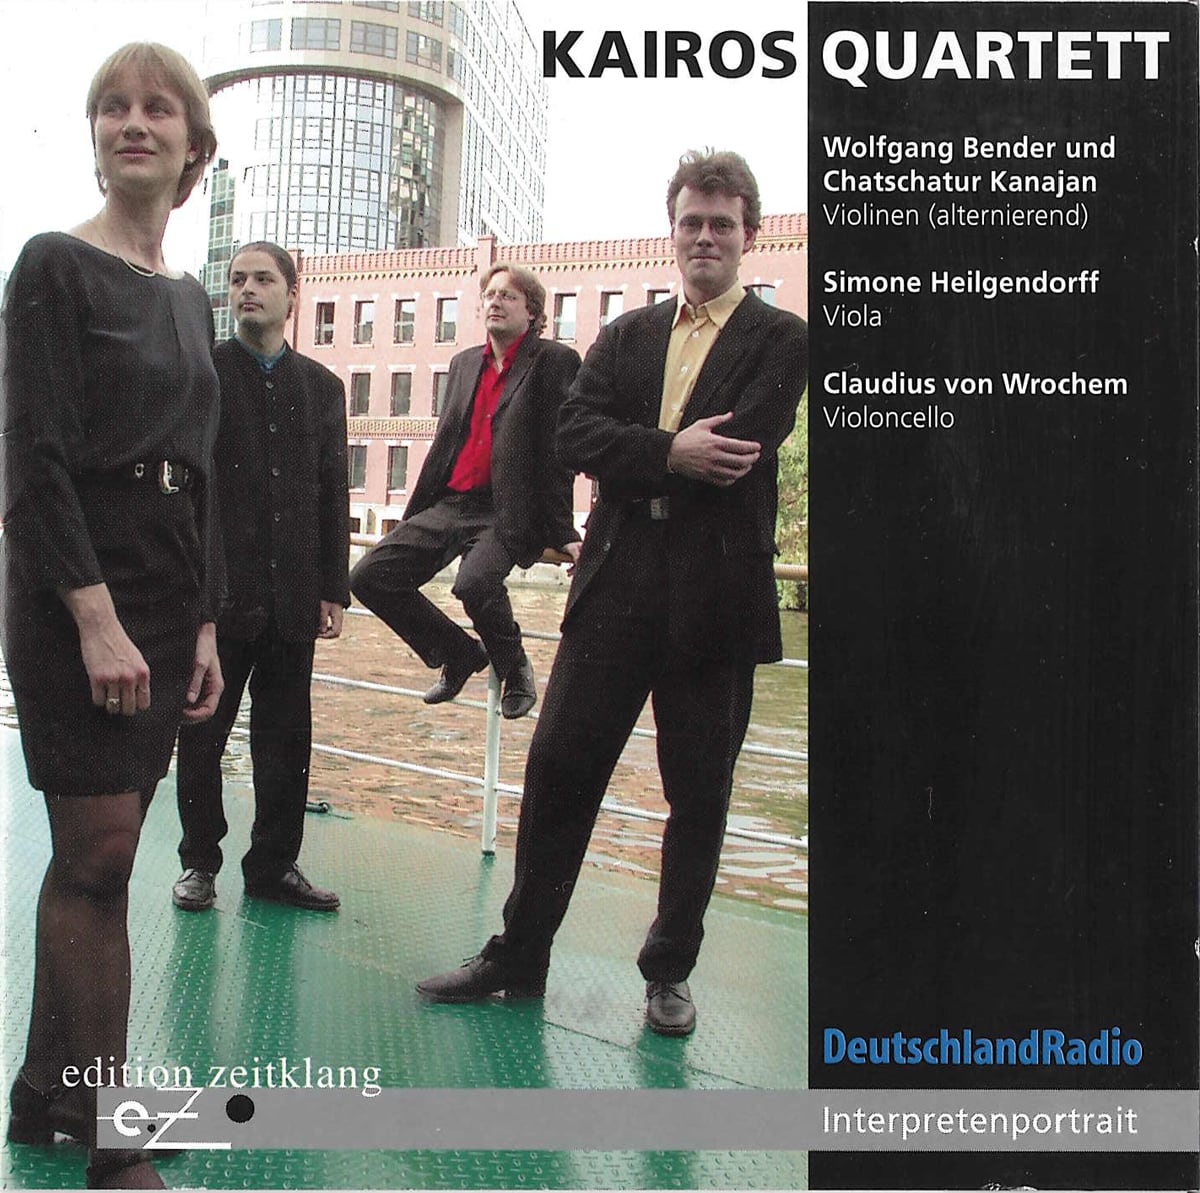 Interpretenportrait Kairos Quartett